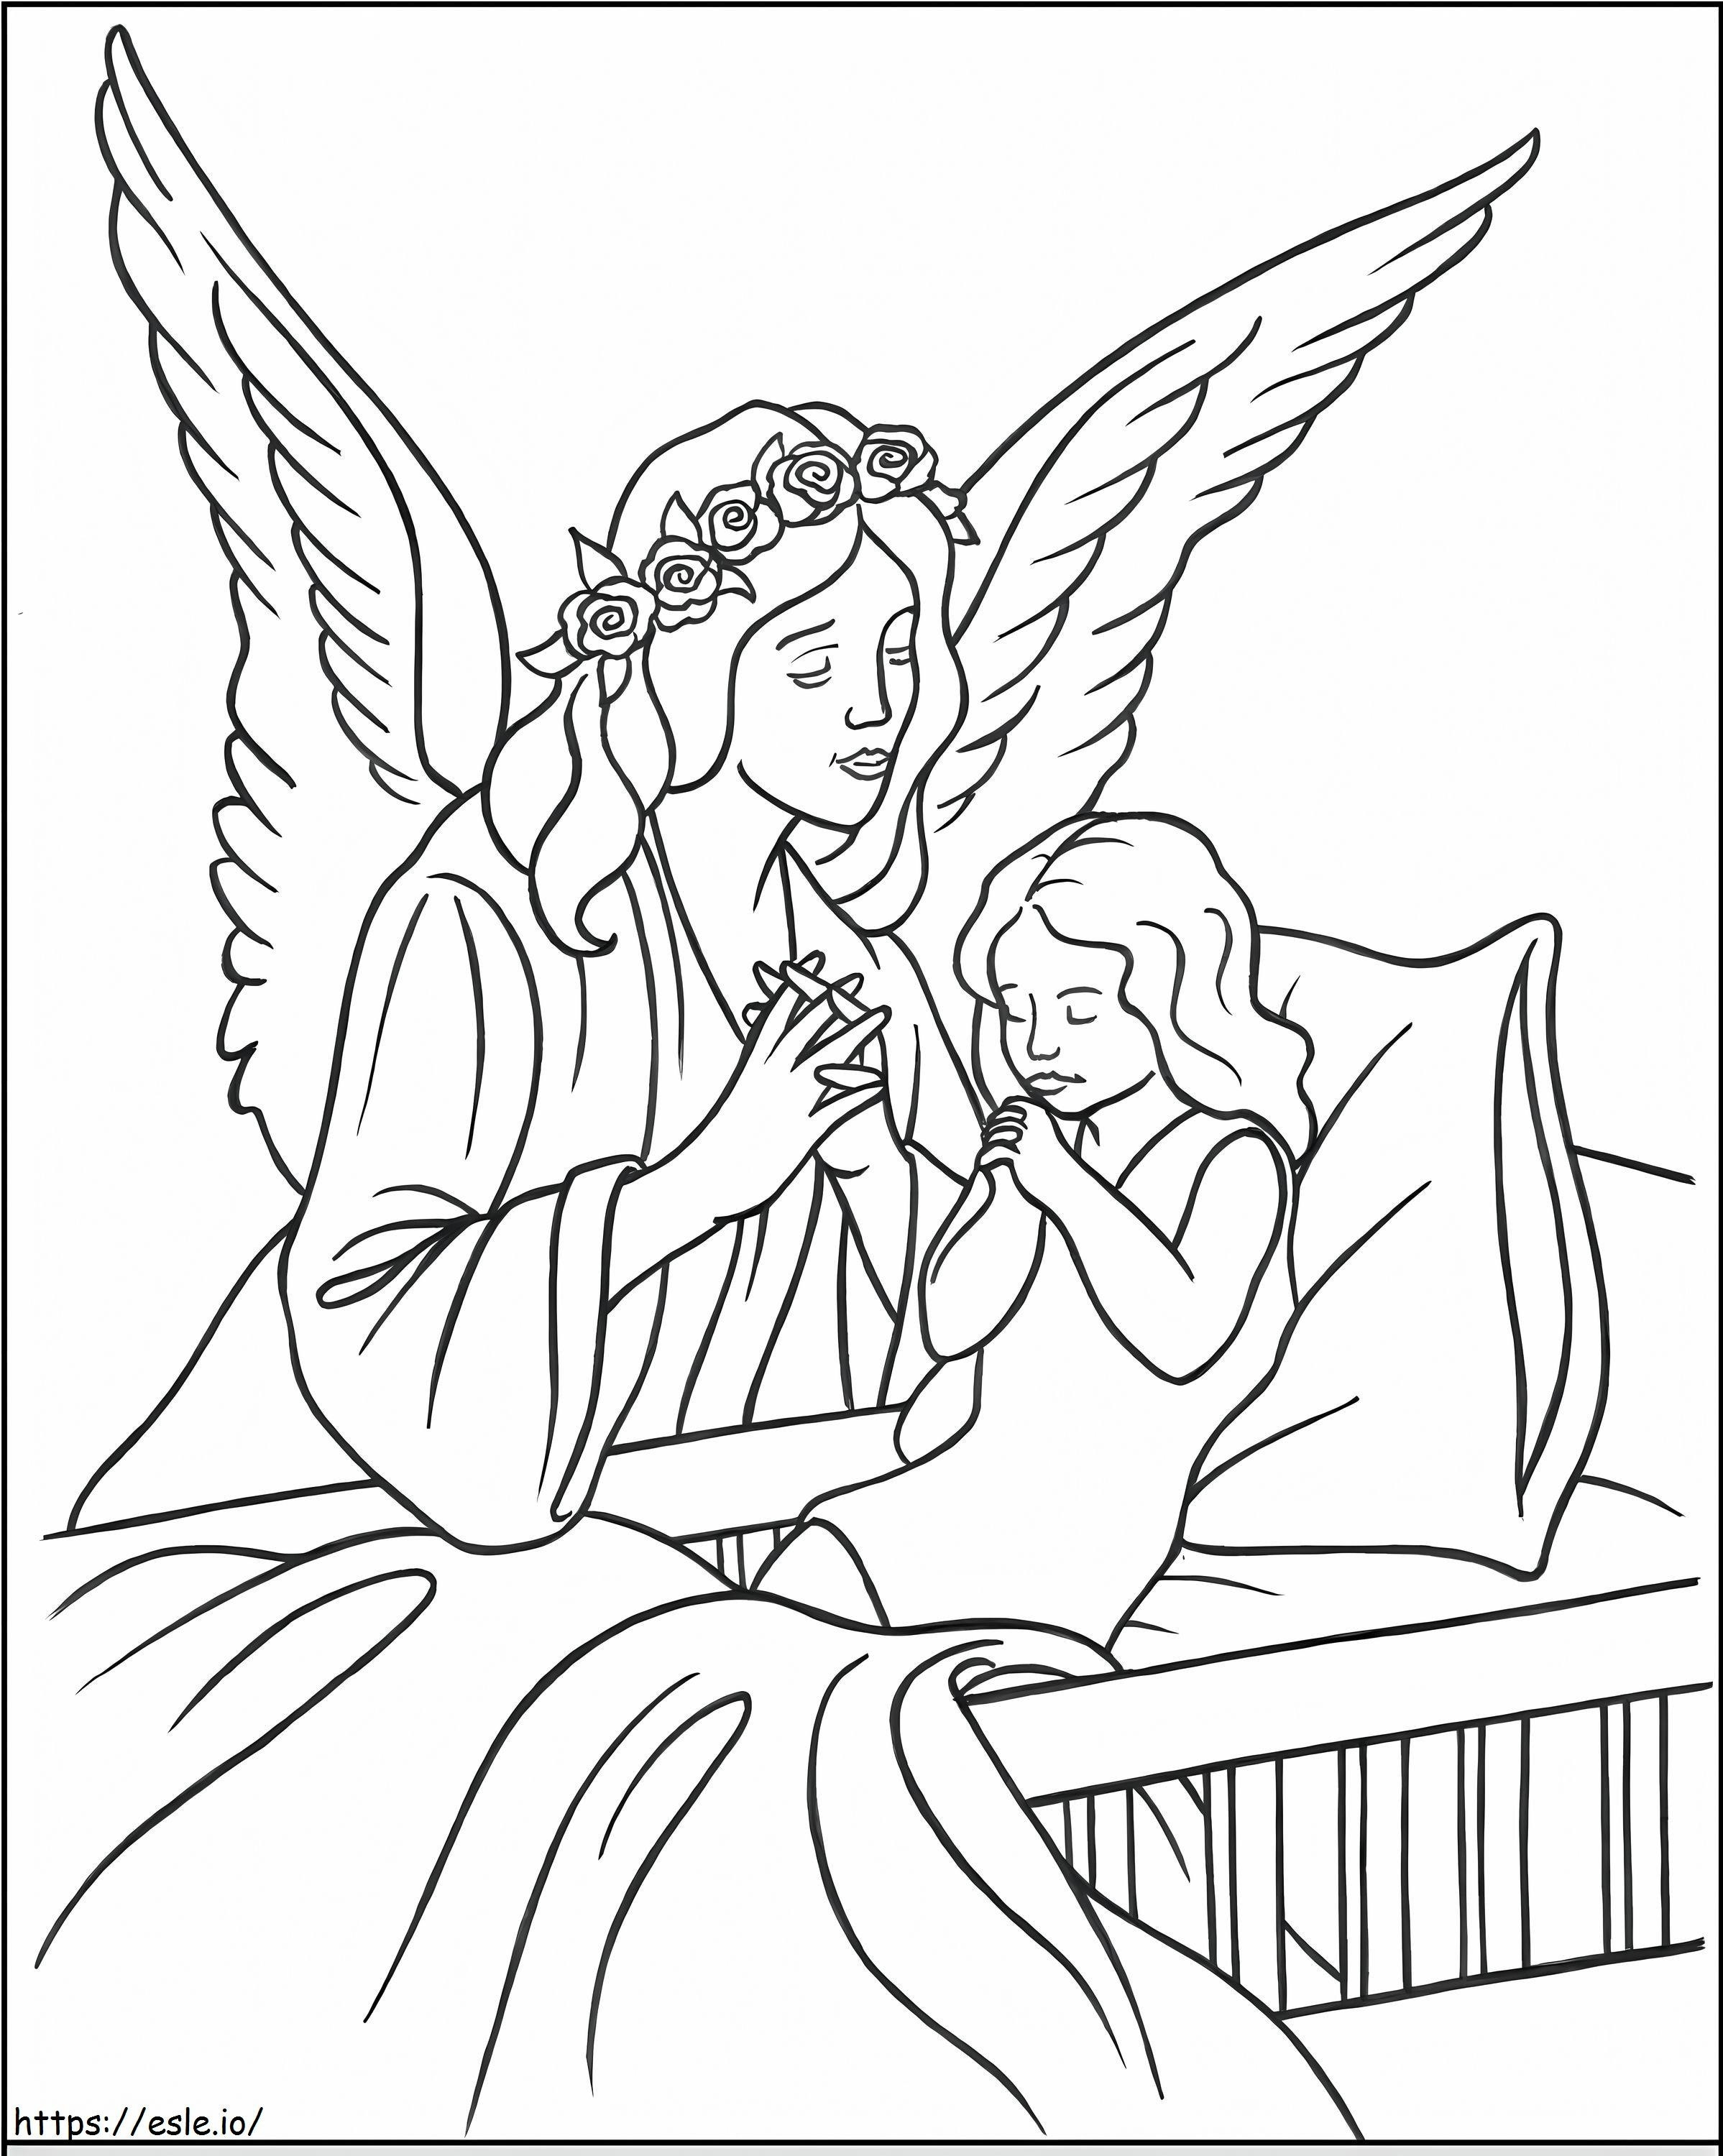 Malaikat Dengan Anak Gambar Mewarnai